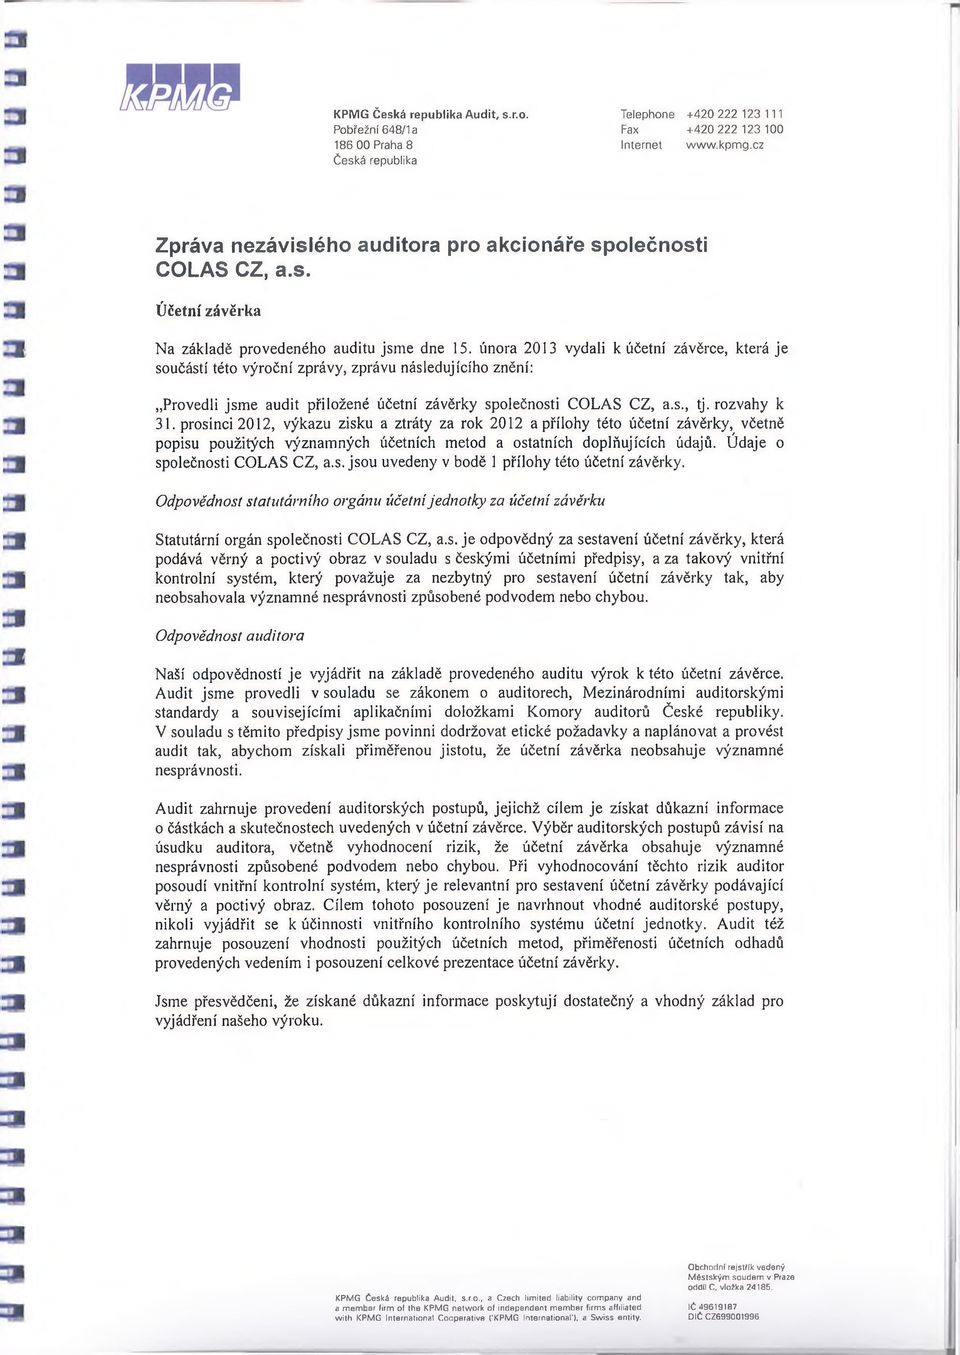 února 2013 vydali k účetní závěrce, která je součástí této výroční zprávy, zprávu následujícího znění: Provedli jsme audit přiložené účetní závěrky společnosti COLAS CZ, a.s., tj. rozvahy k 31.